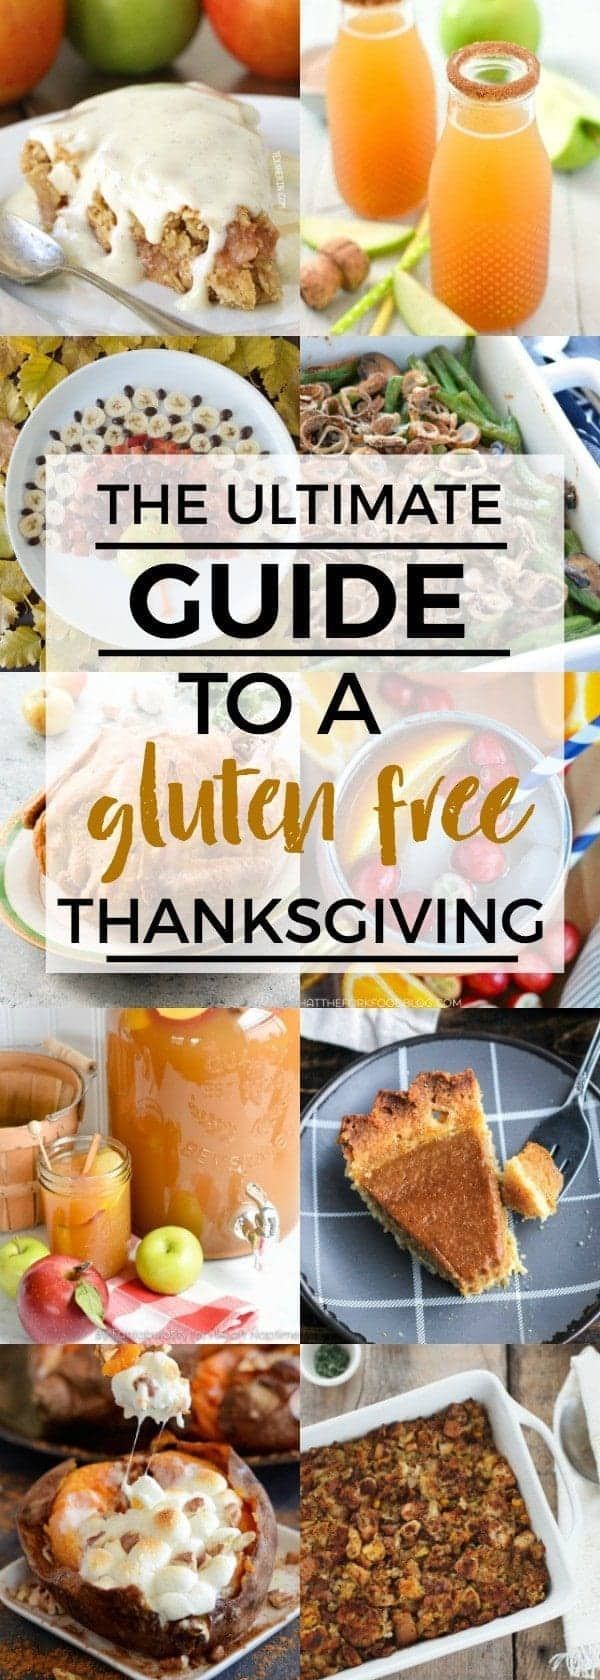 18 gluten free holiday Recipes ideas